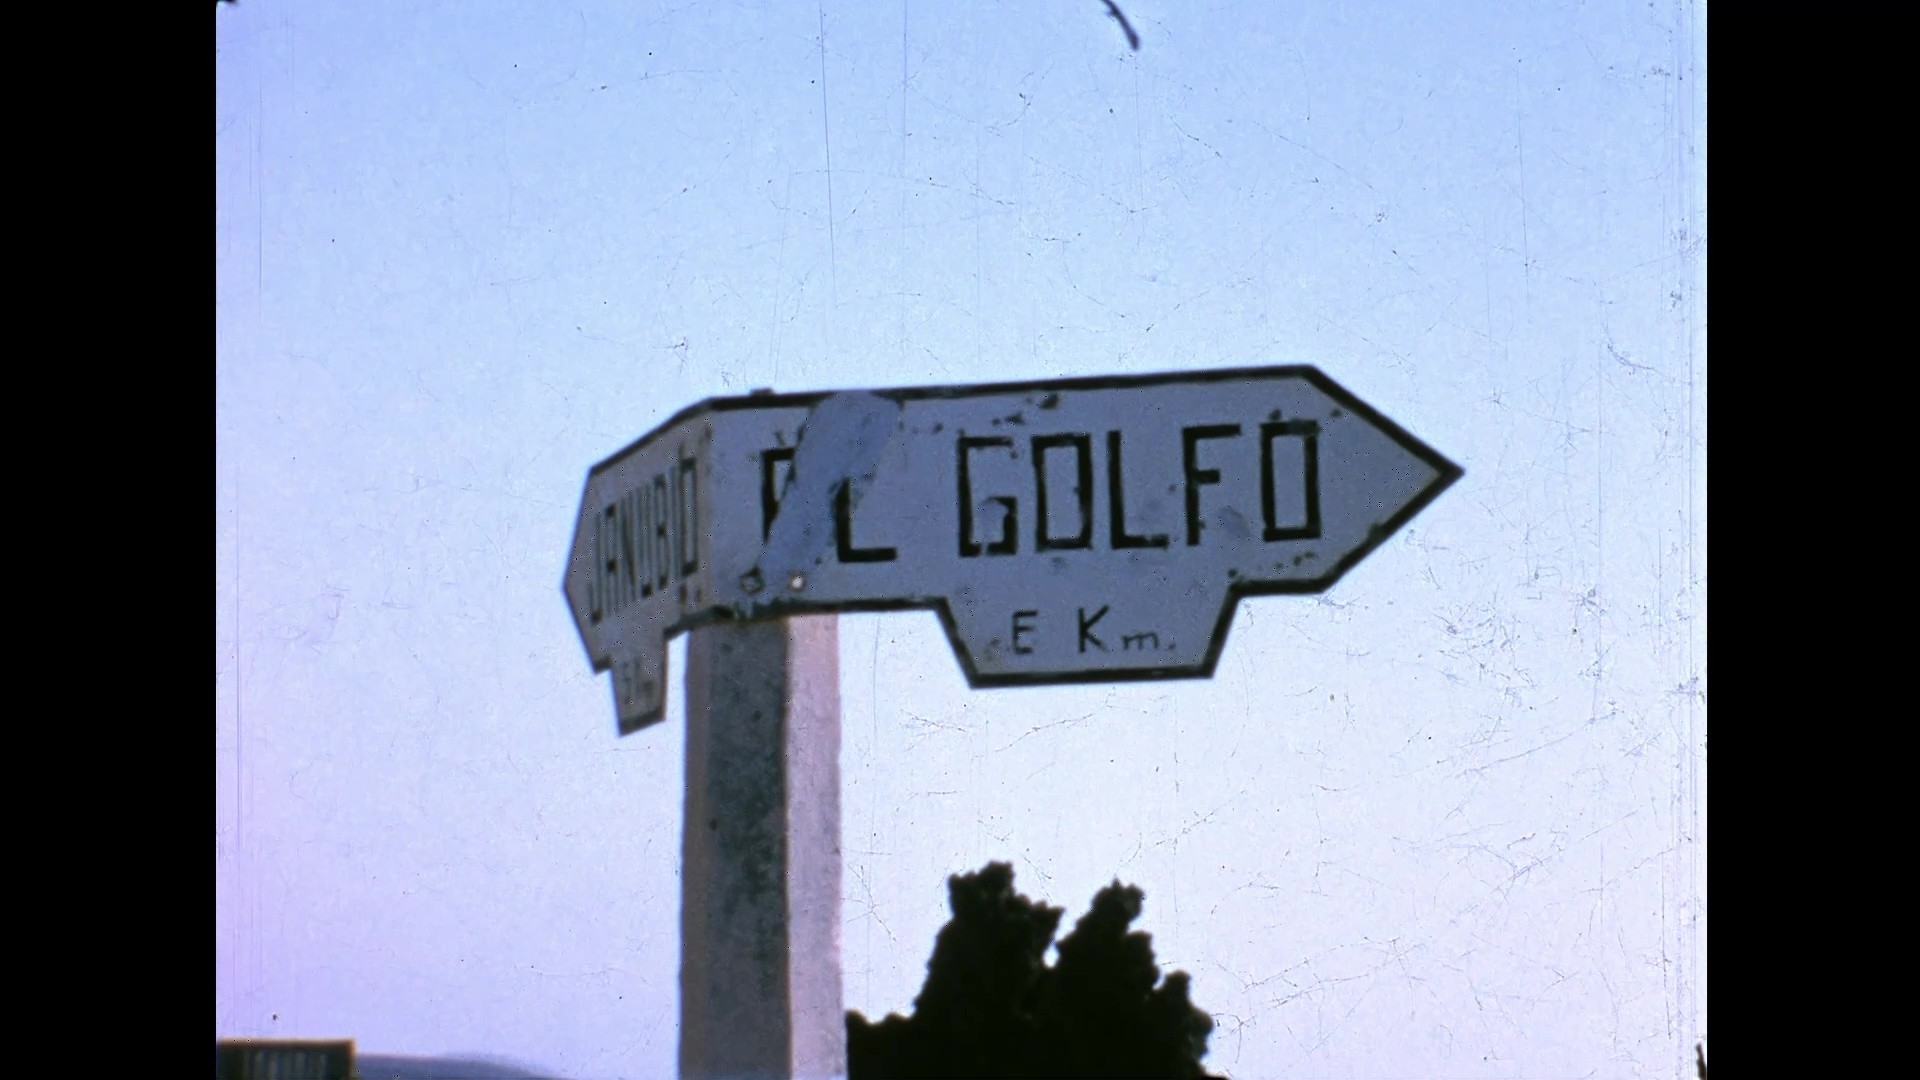 Visitando El Golfo (c. 1961)